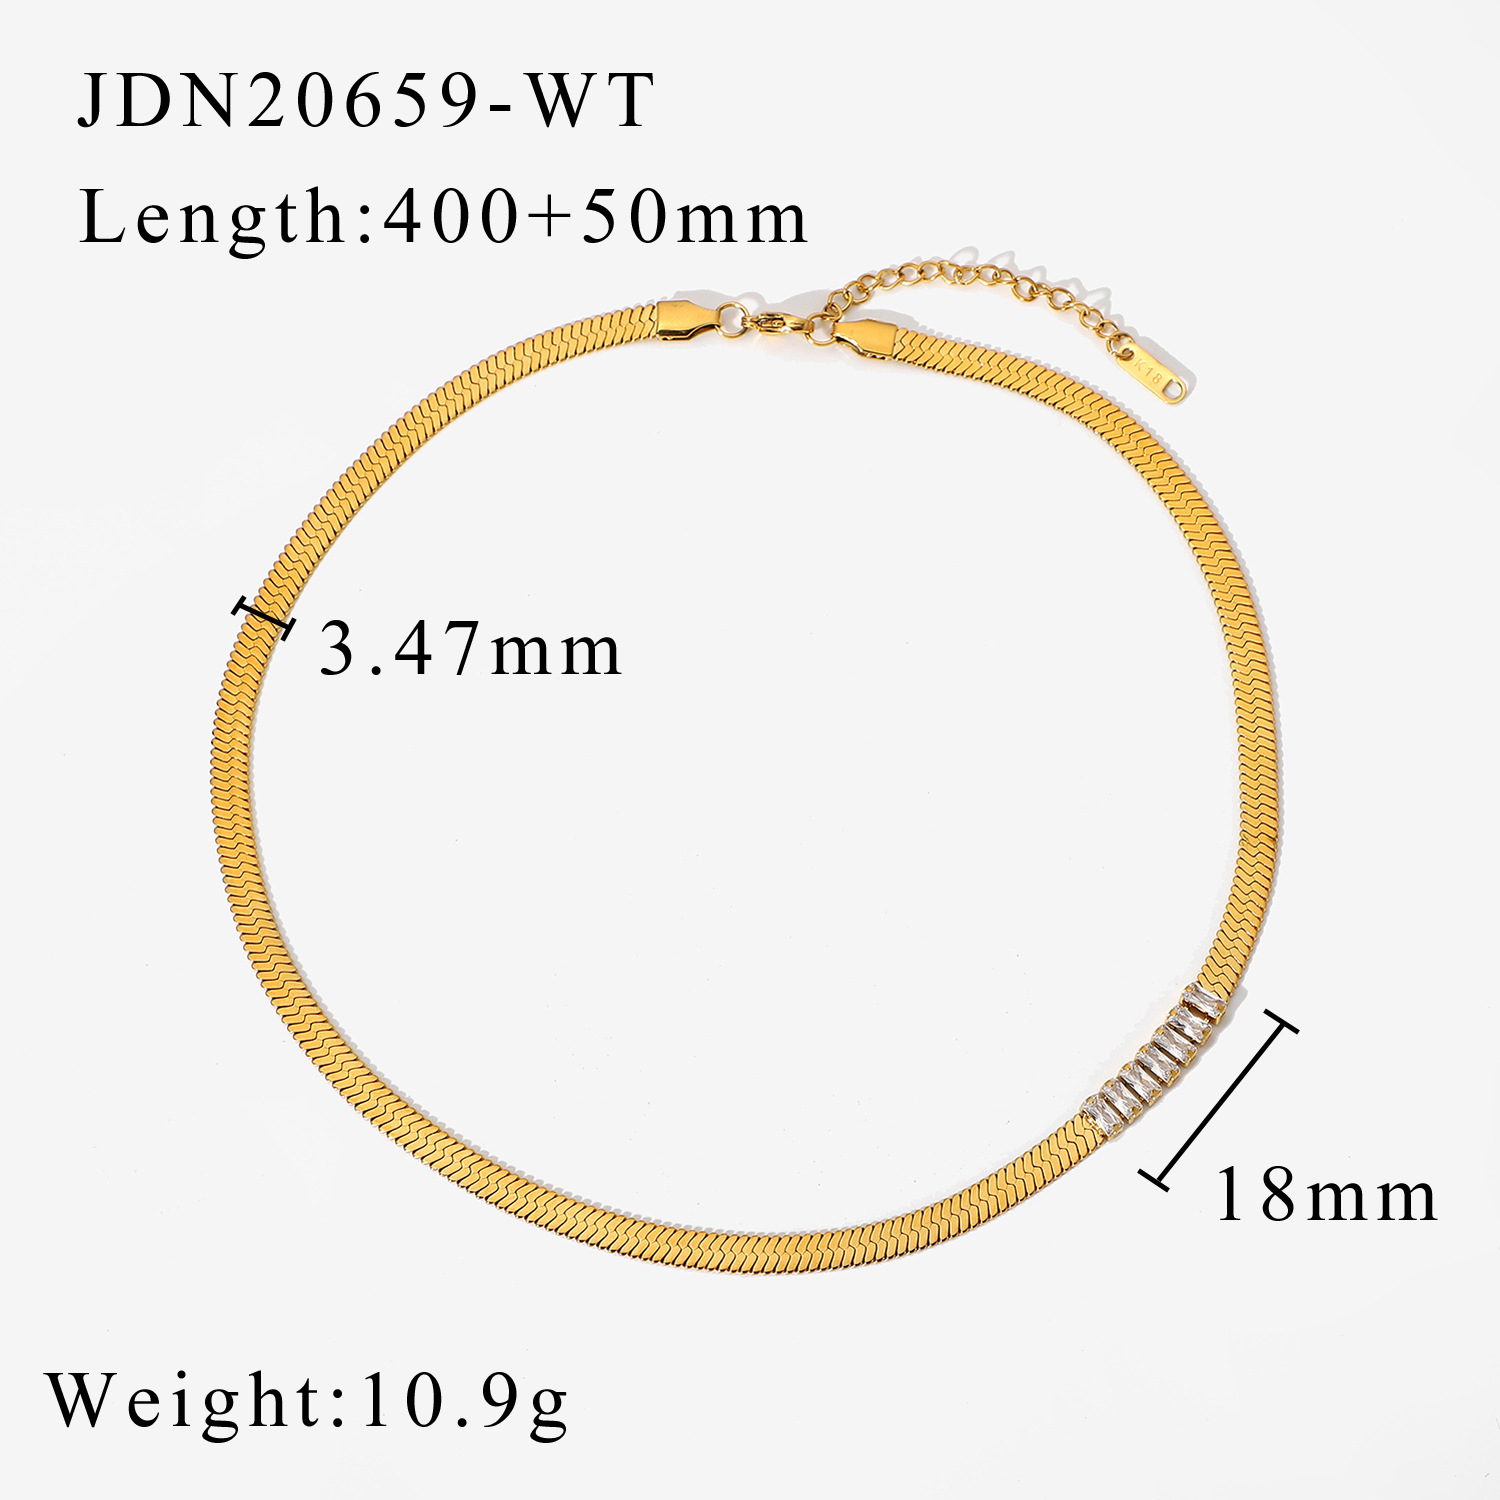 JDN20659-WT